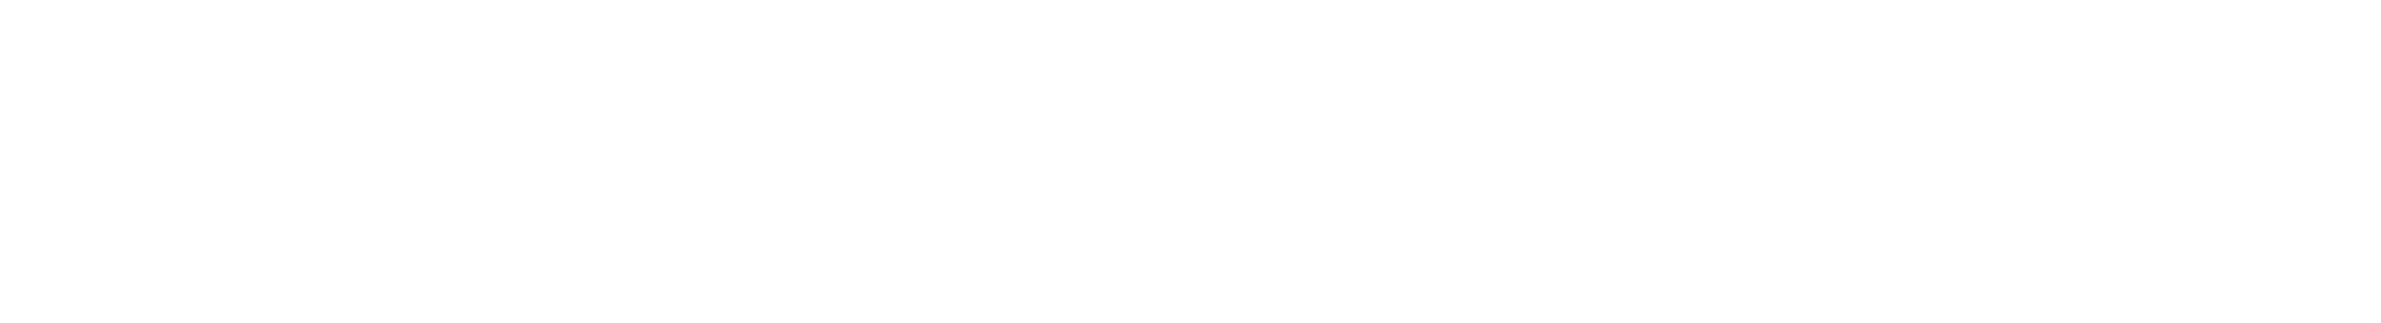 Office of Medicaid Innovation Logo